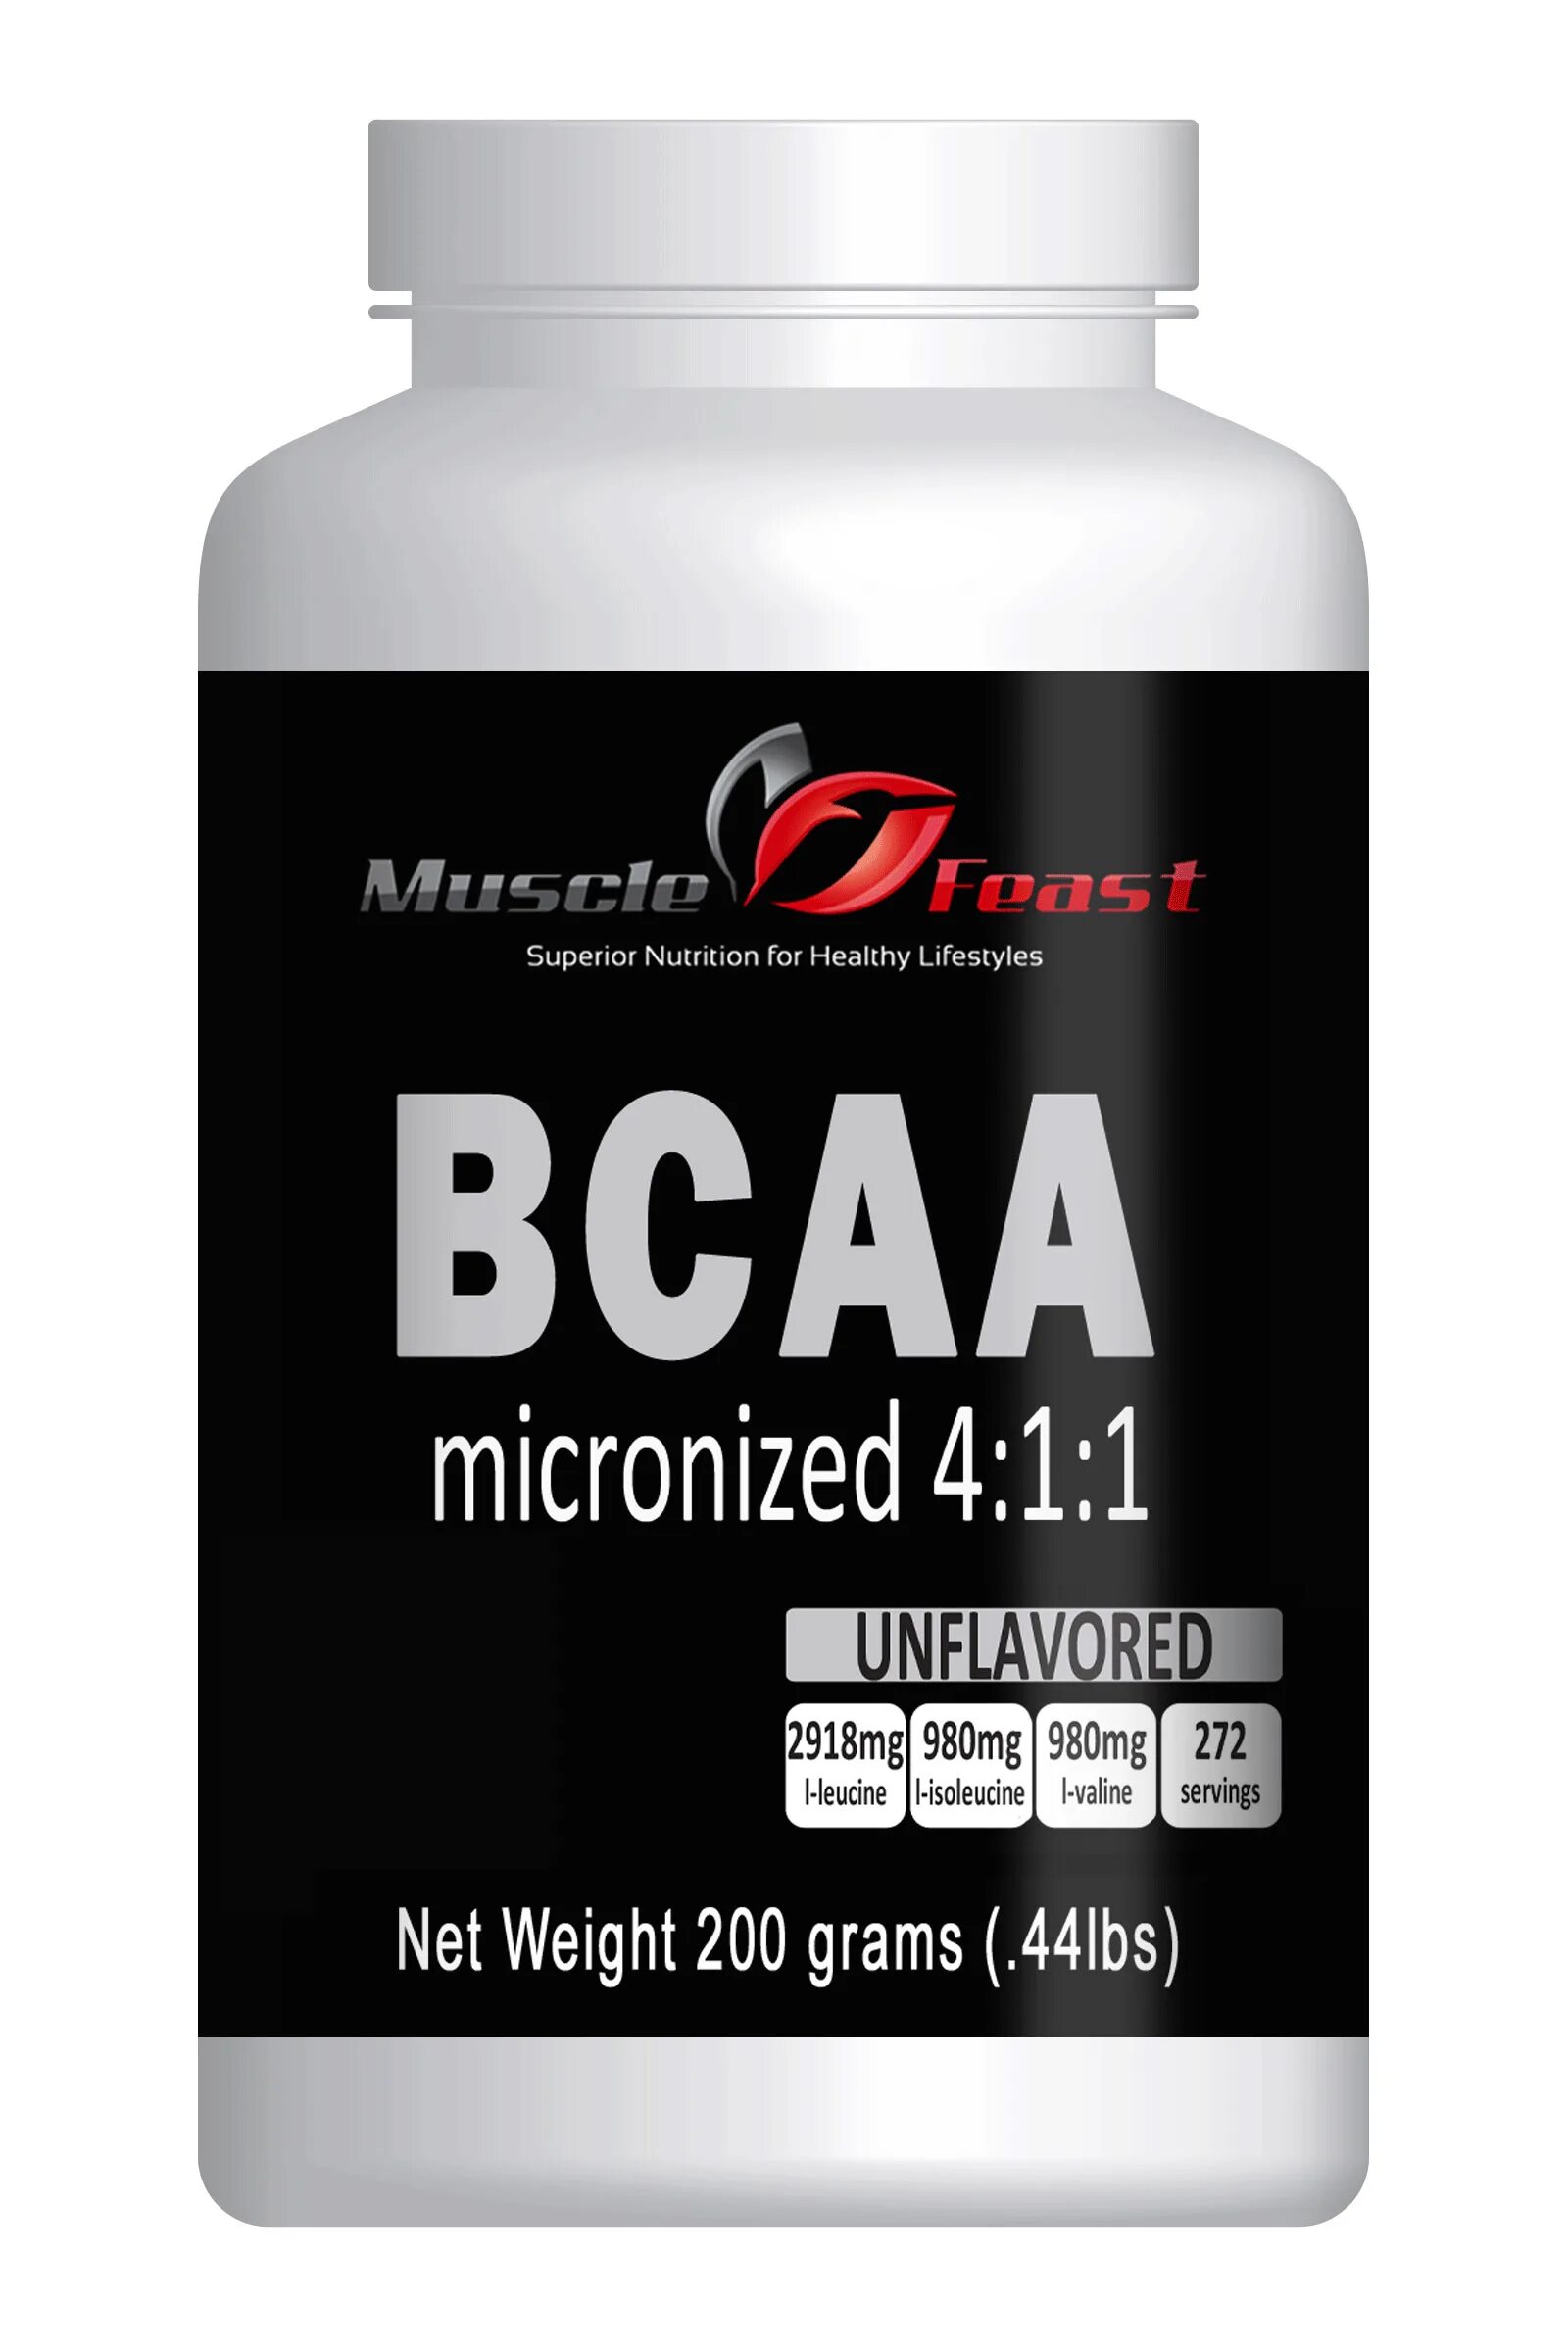 Бца что это такое в медицине. BCAA Микронизед. BCAA эффект. BCAA В красной упаковке.